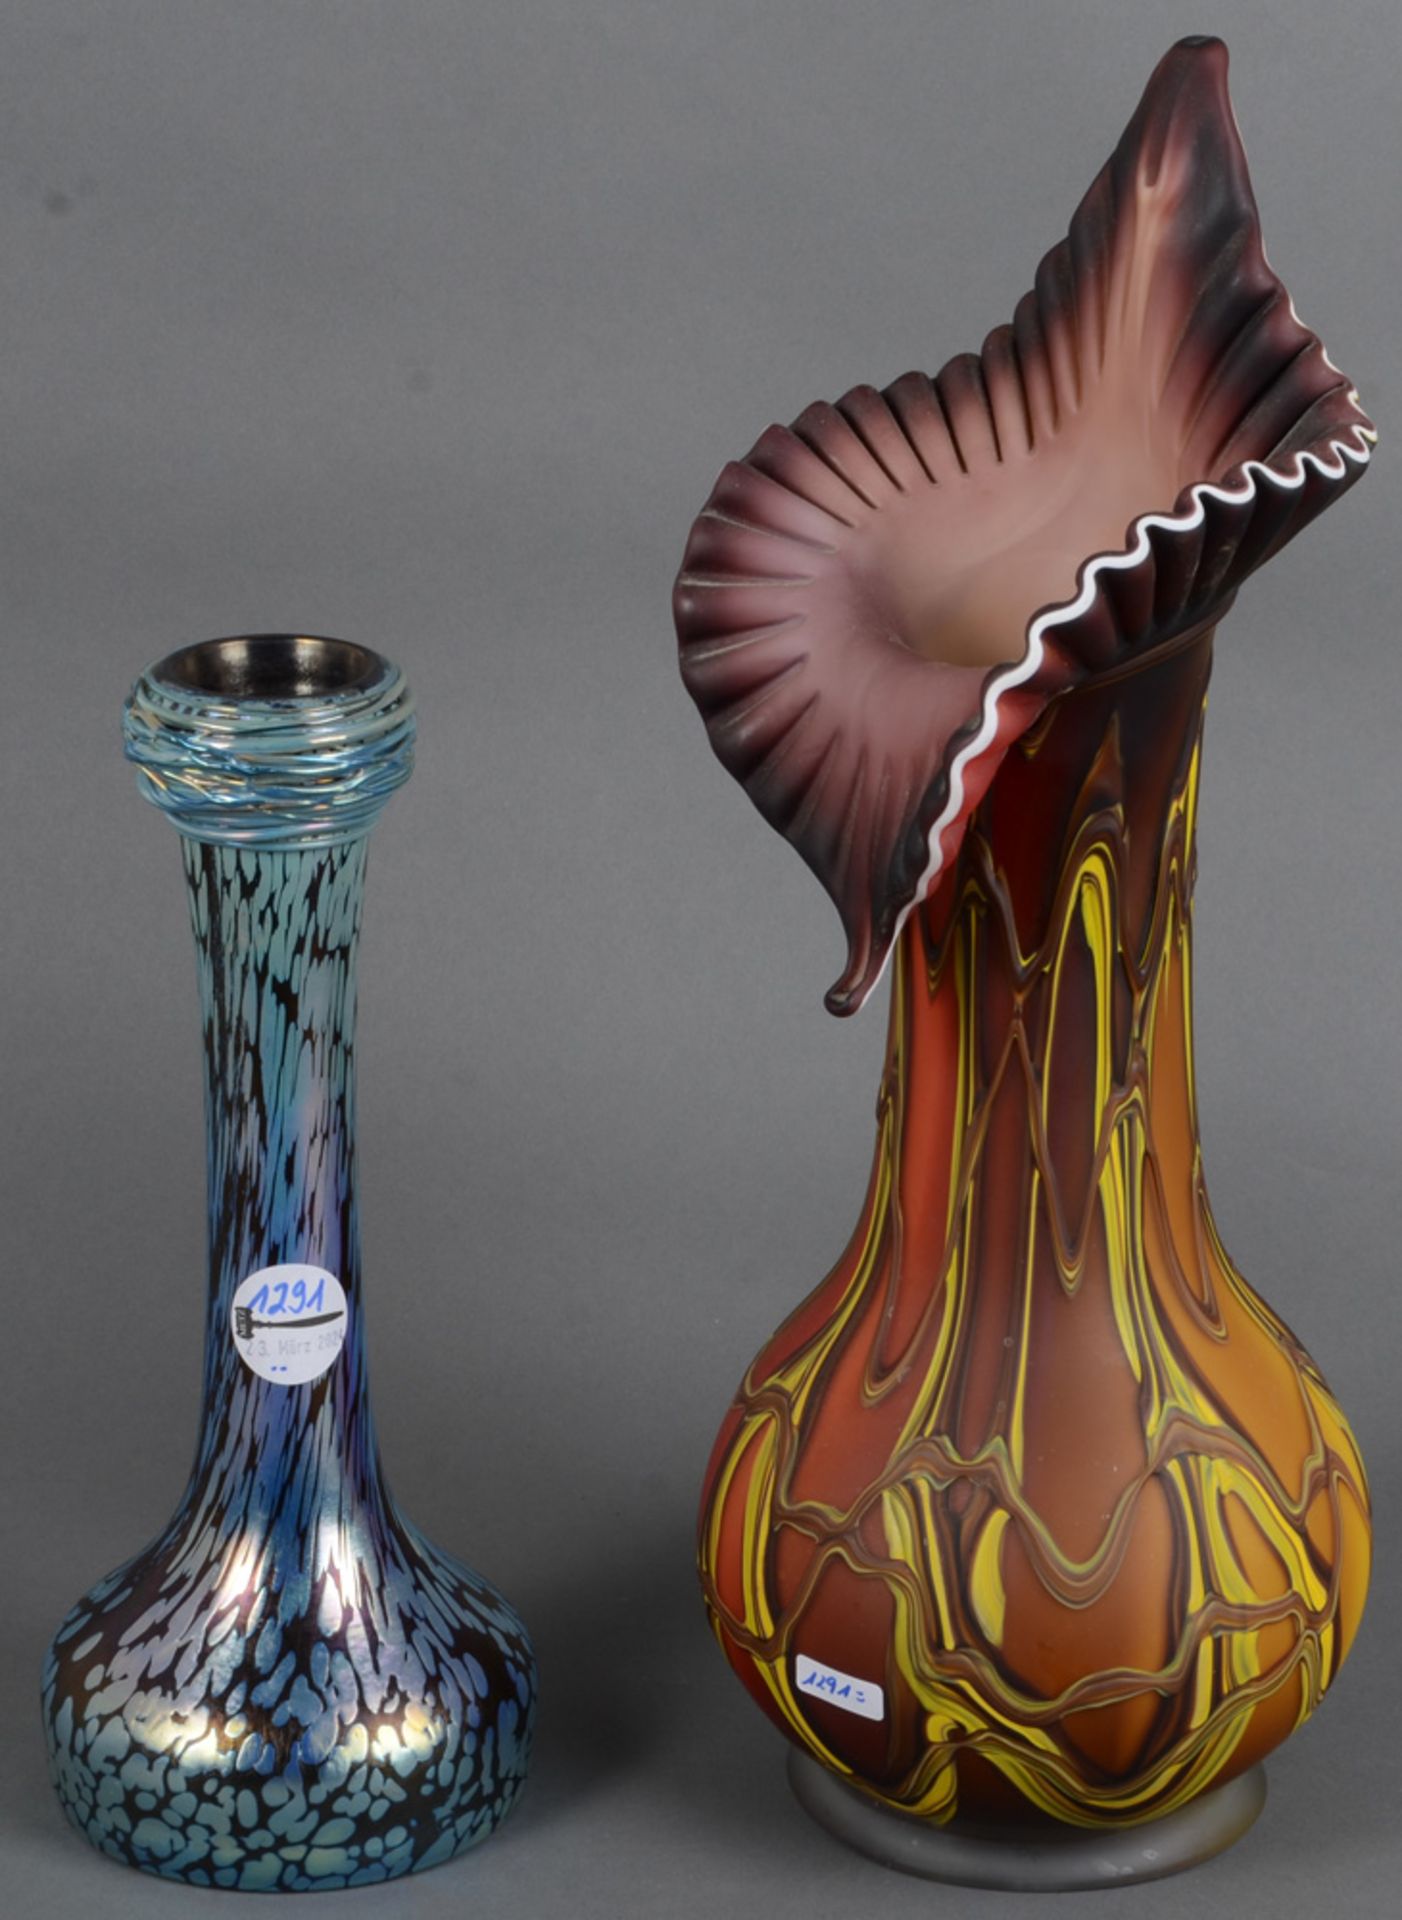 Zwei Vasen, u.a. Pallme, König & Habel um 1900. Farbloses Glas, farbig überfangen, mit aufgeschmolze